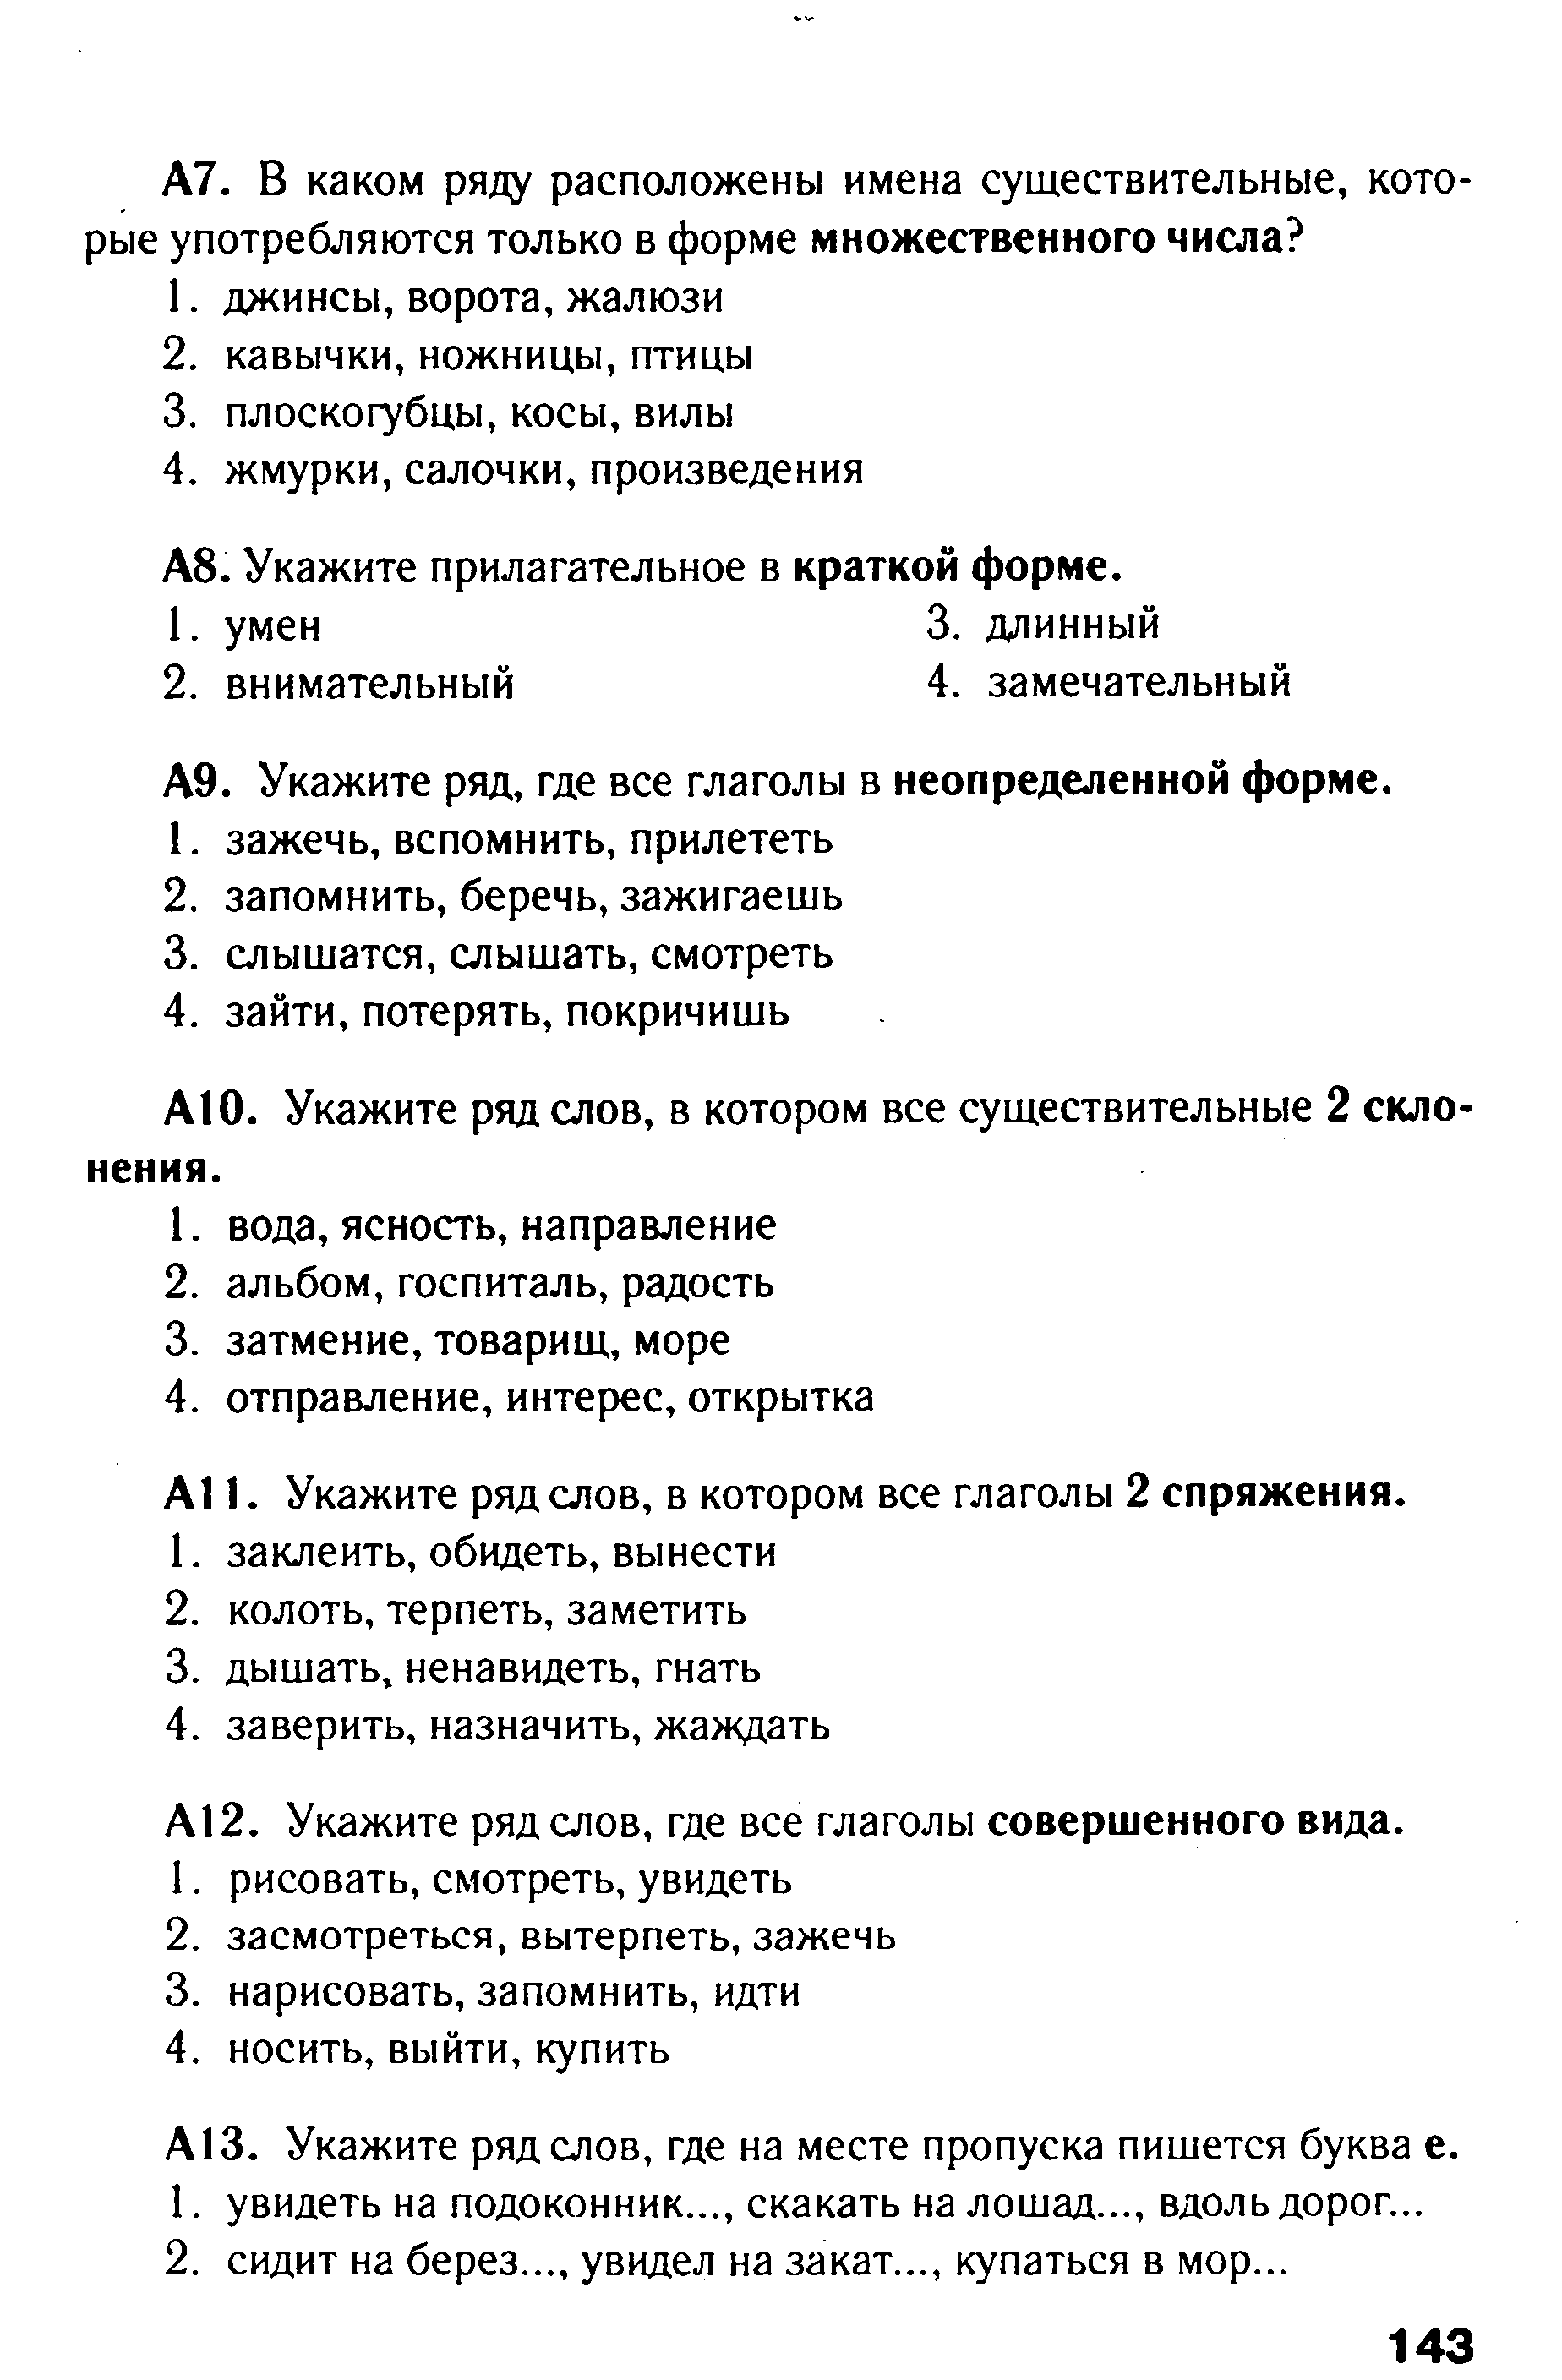 Тест по русскому языку в формате ГИА на тему: Морфология. Орфография вариант 2 (5 класс)